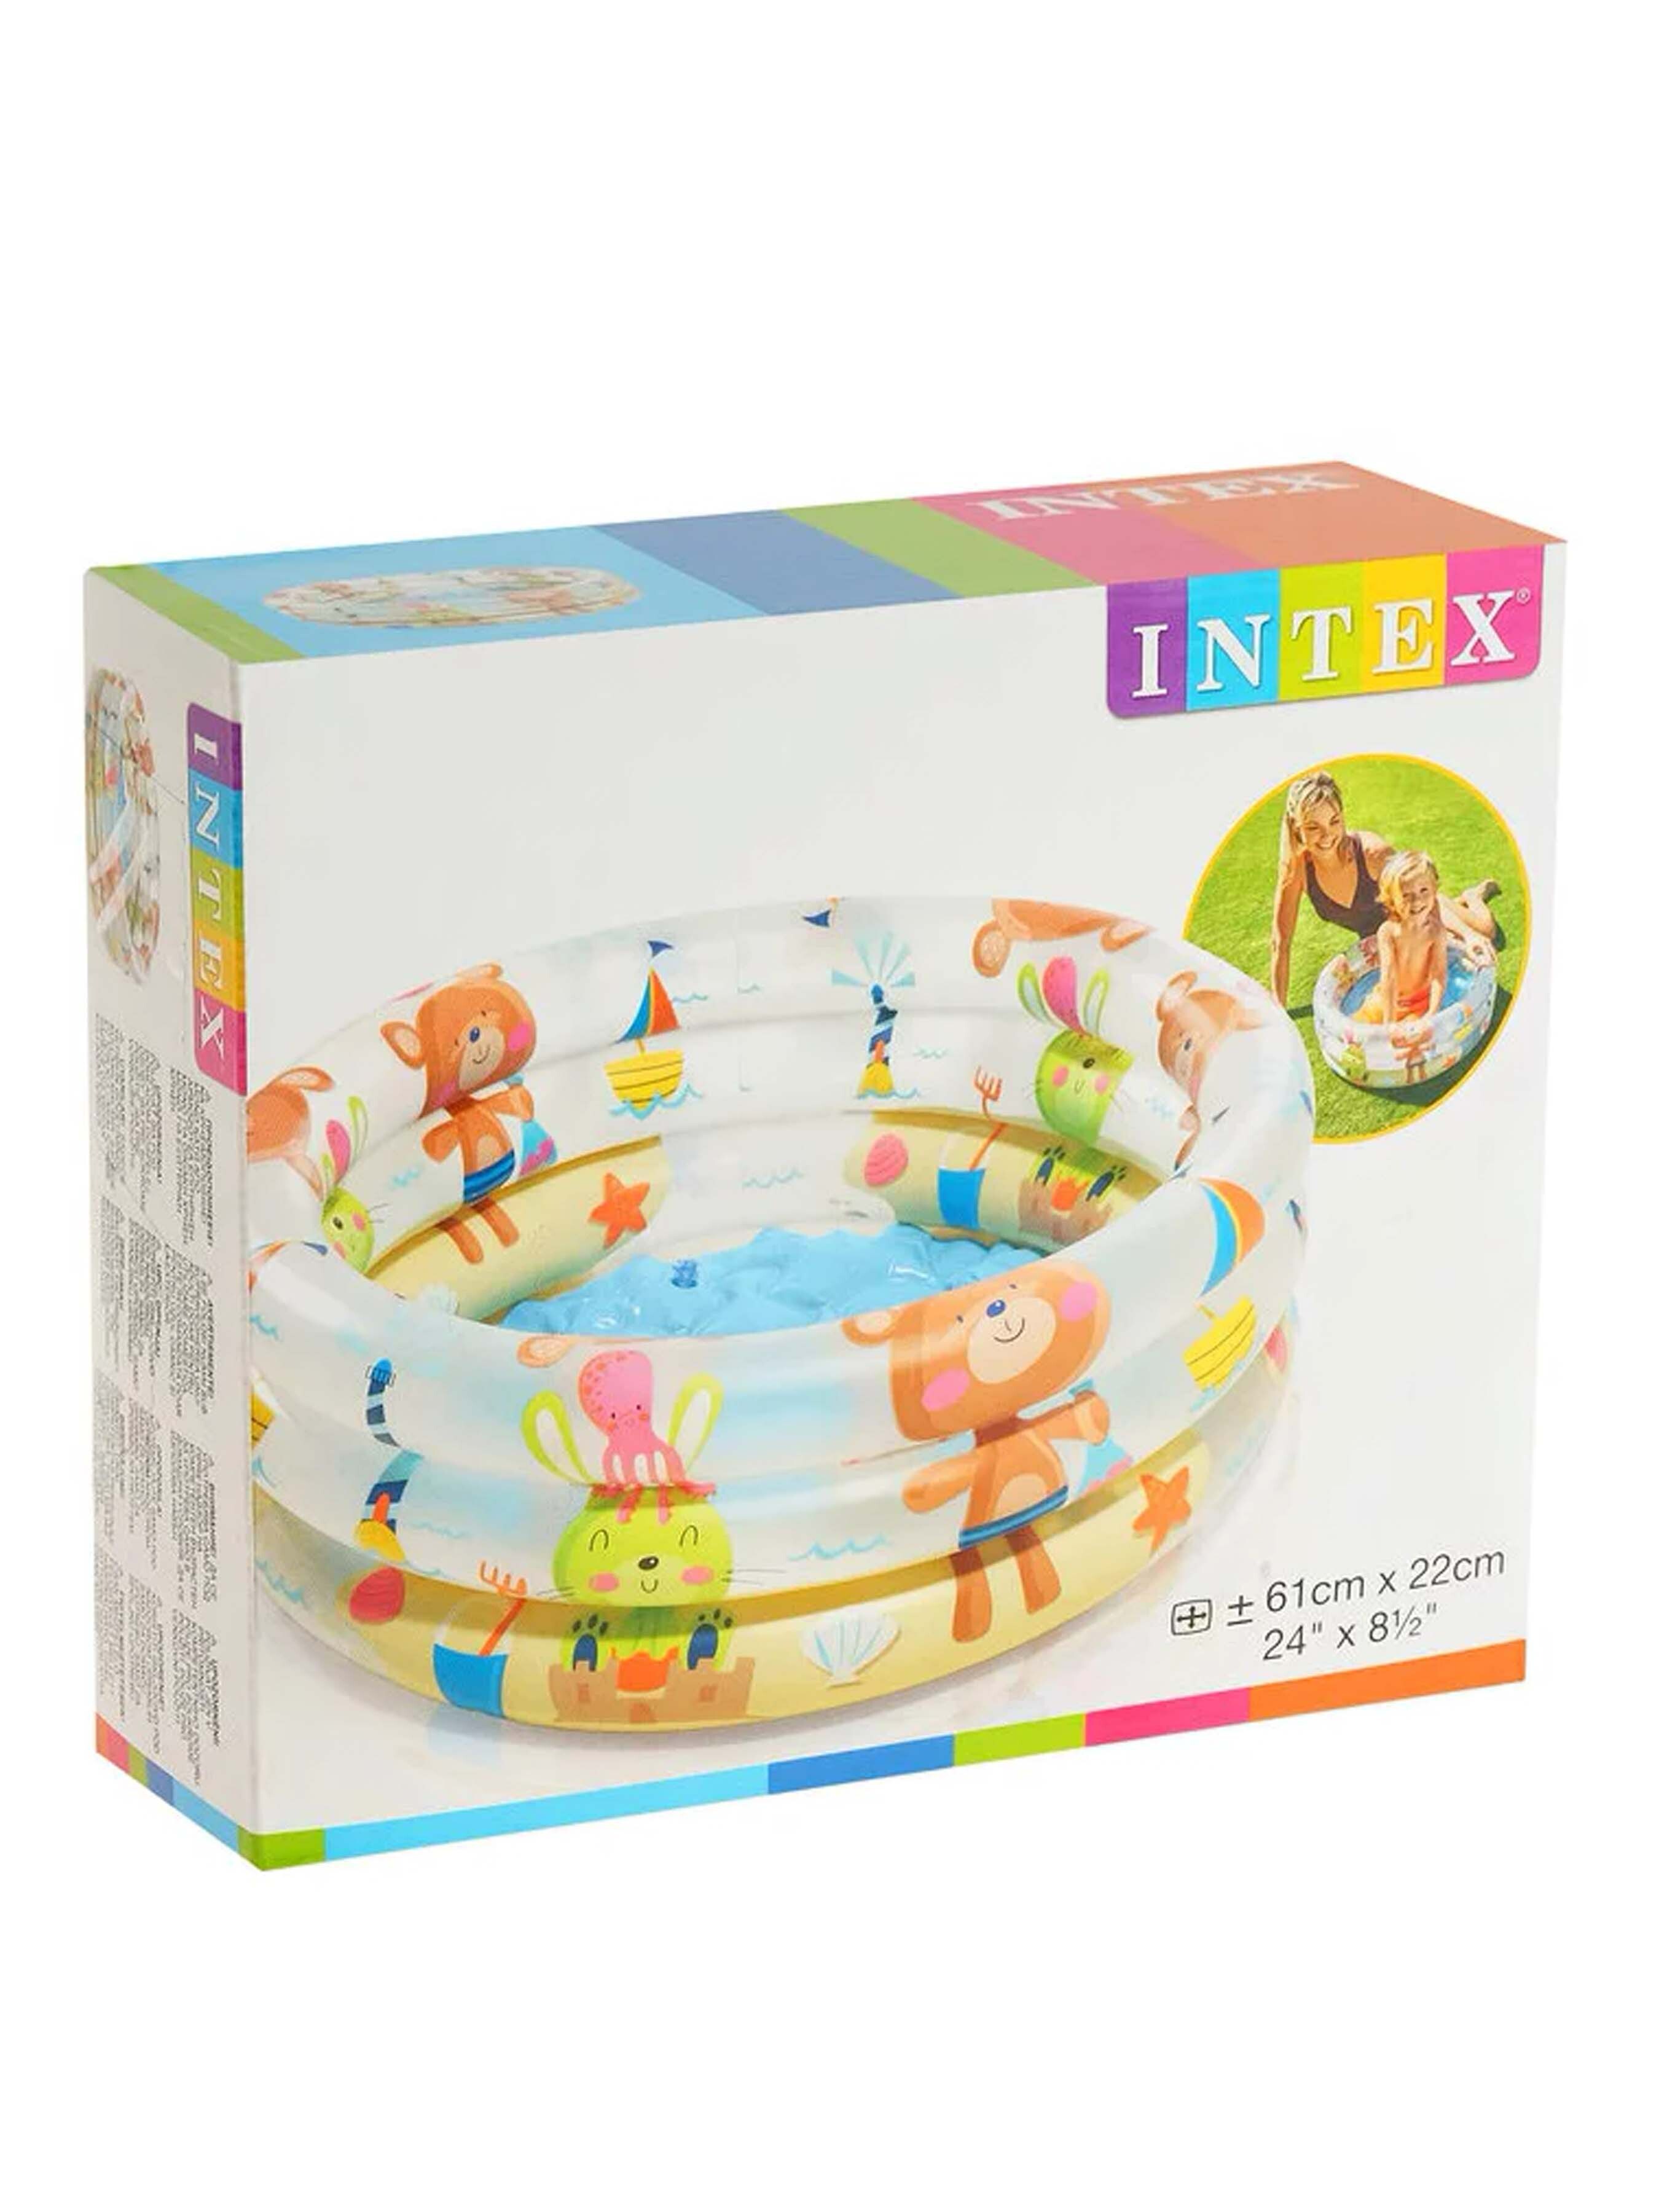 Детский надувной бассейн INTEX 57106 Мишки 61х22 см 33 л детский надувной бассейн 61x22см intex динозавр 57106